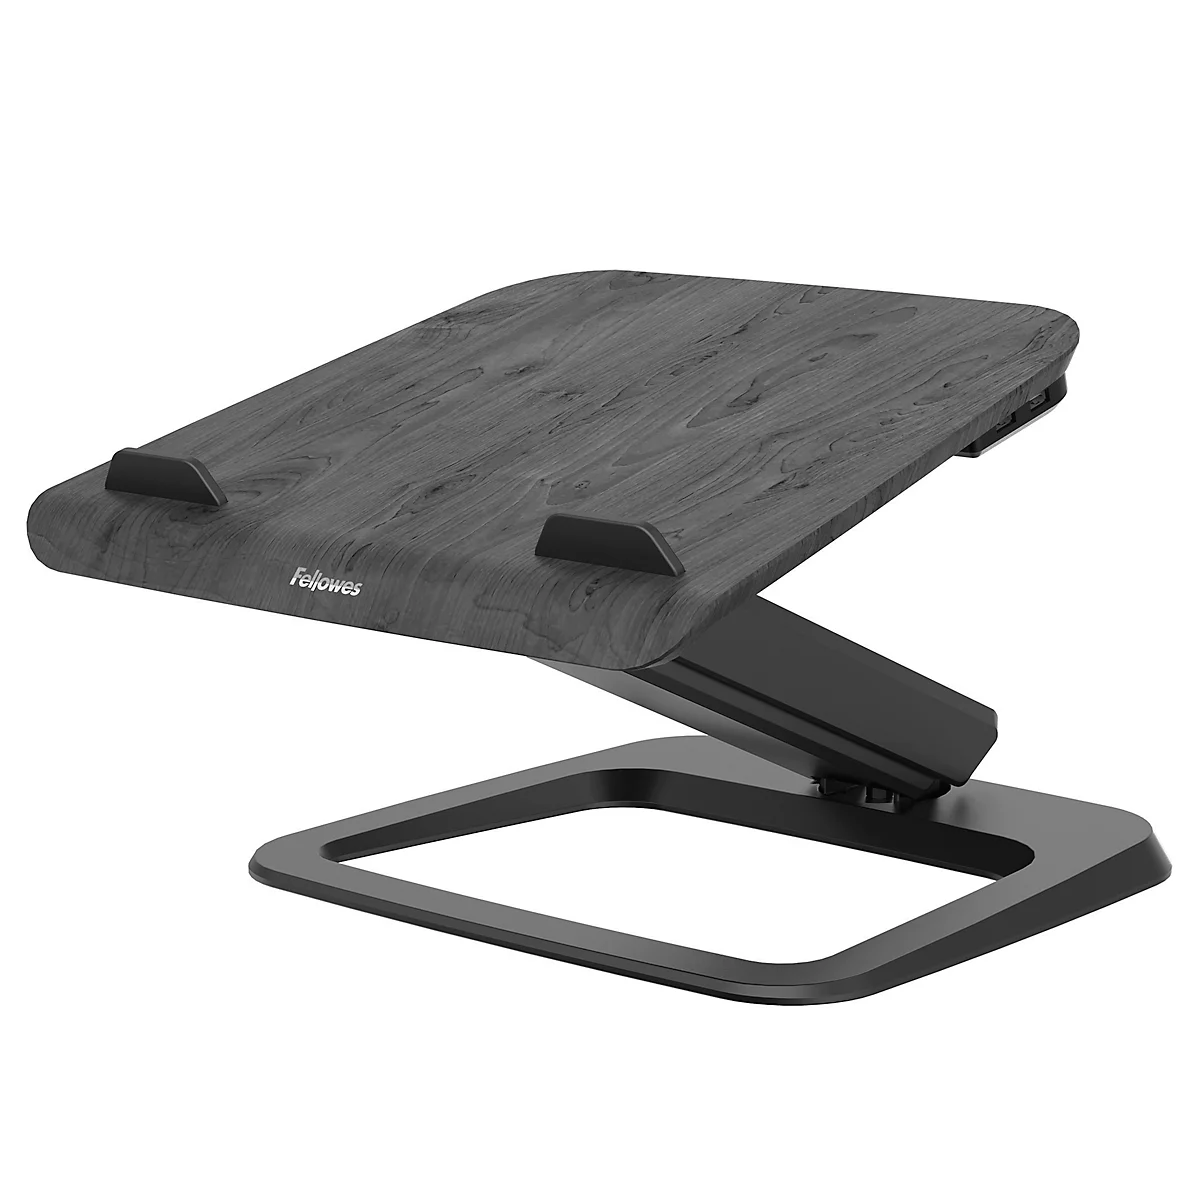 Laptop-Ständer Fellowes Hana™, bis 17 Zoll und 4,5 kg, winkel- und höhenverstellbar, 90° drehbar, USB-Anschlüsse, schwarz